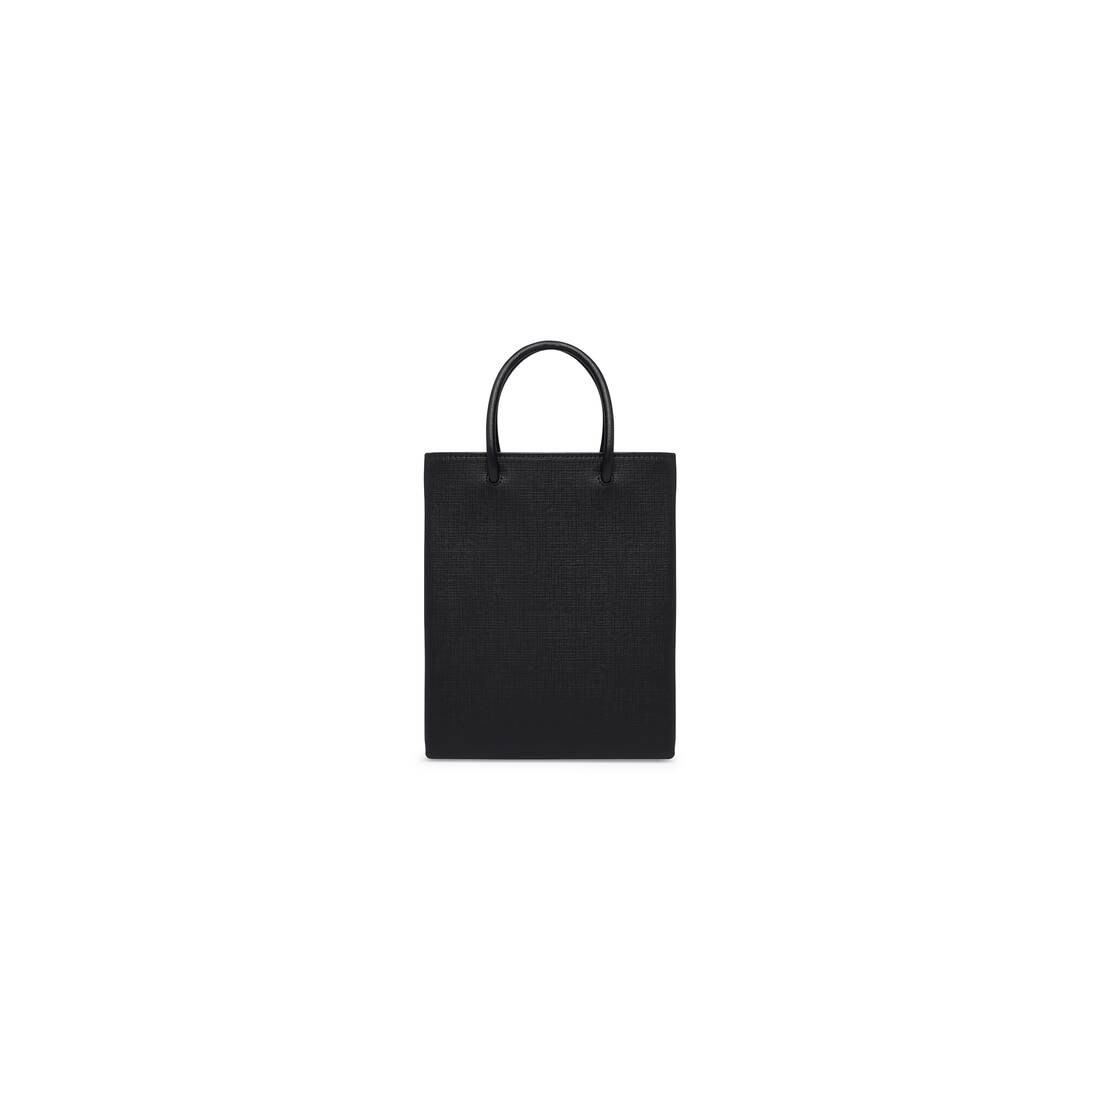 Women's Large Shopping Bag in Black